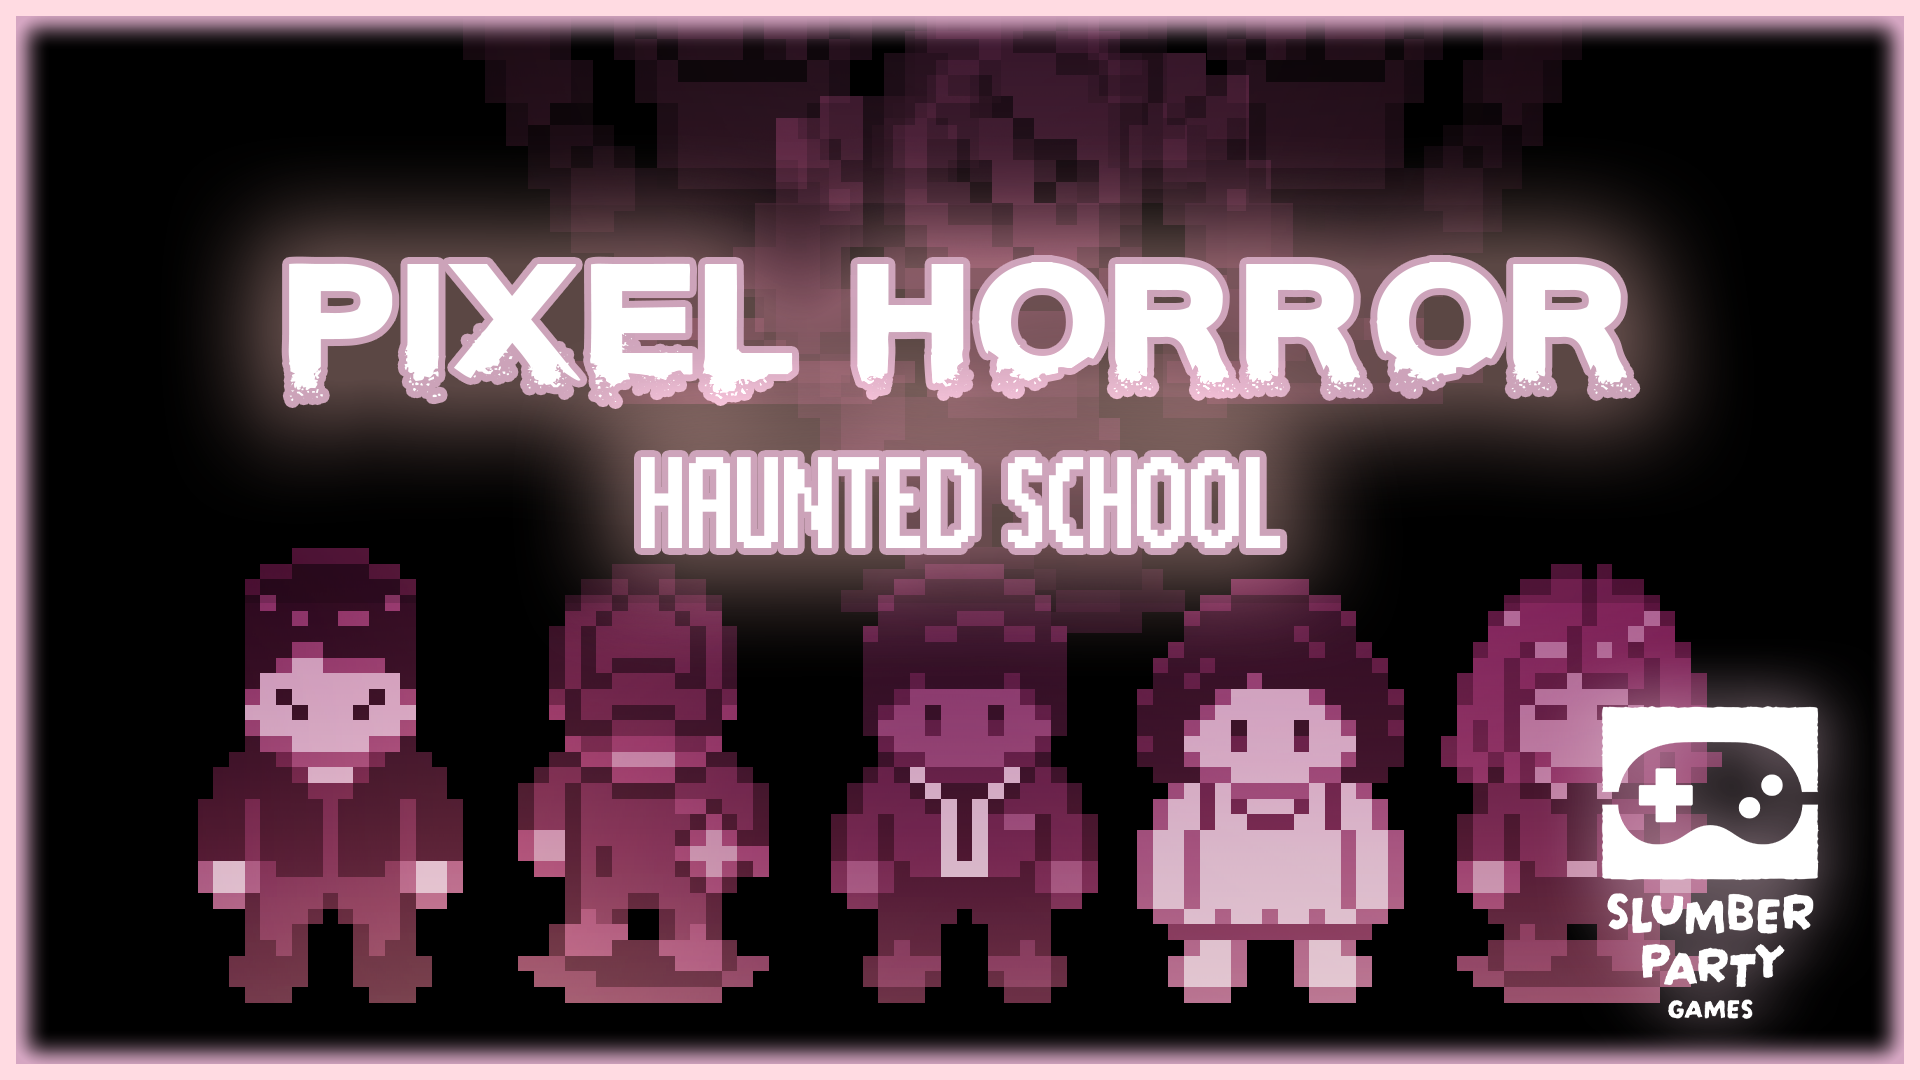 Pixel Horror Tales of the Boarding School